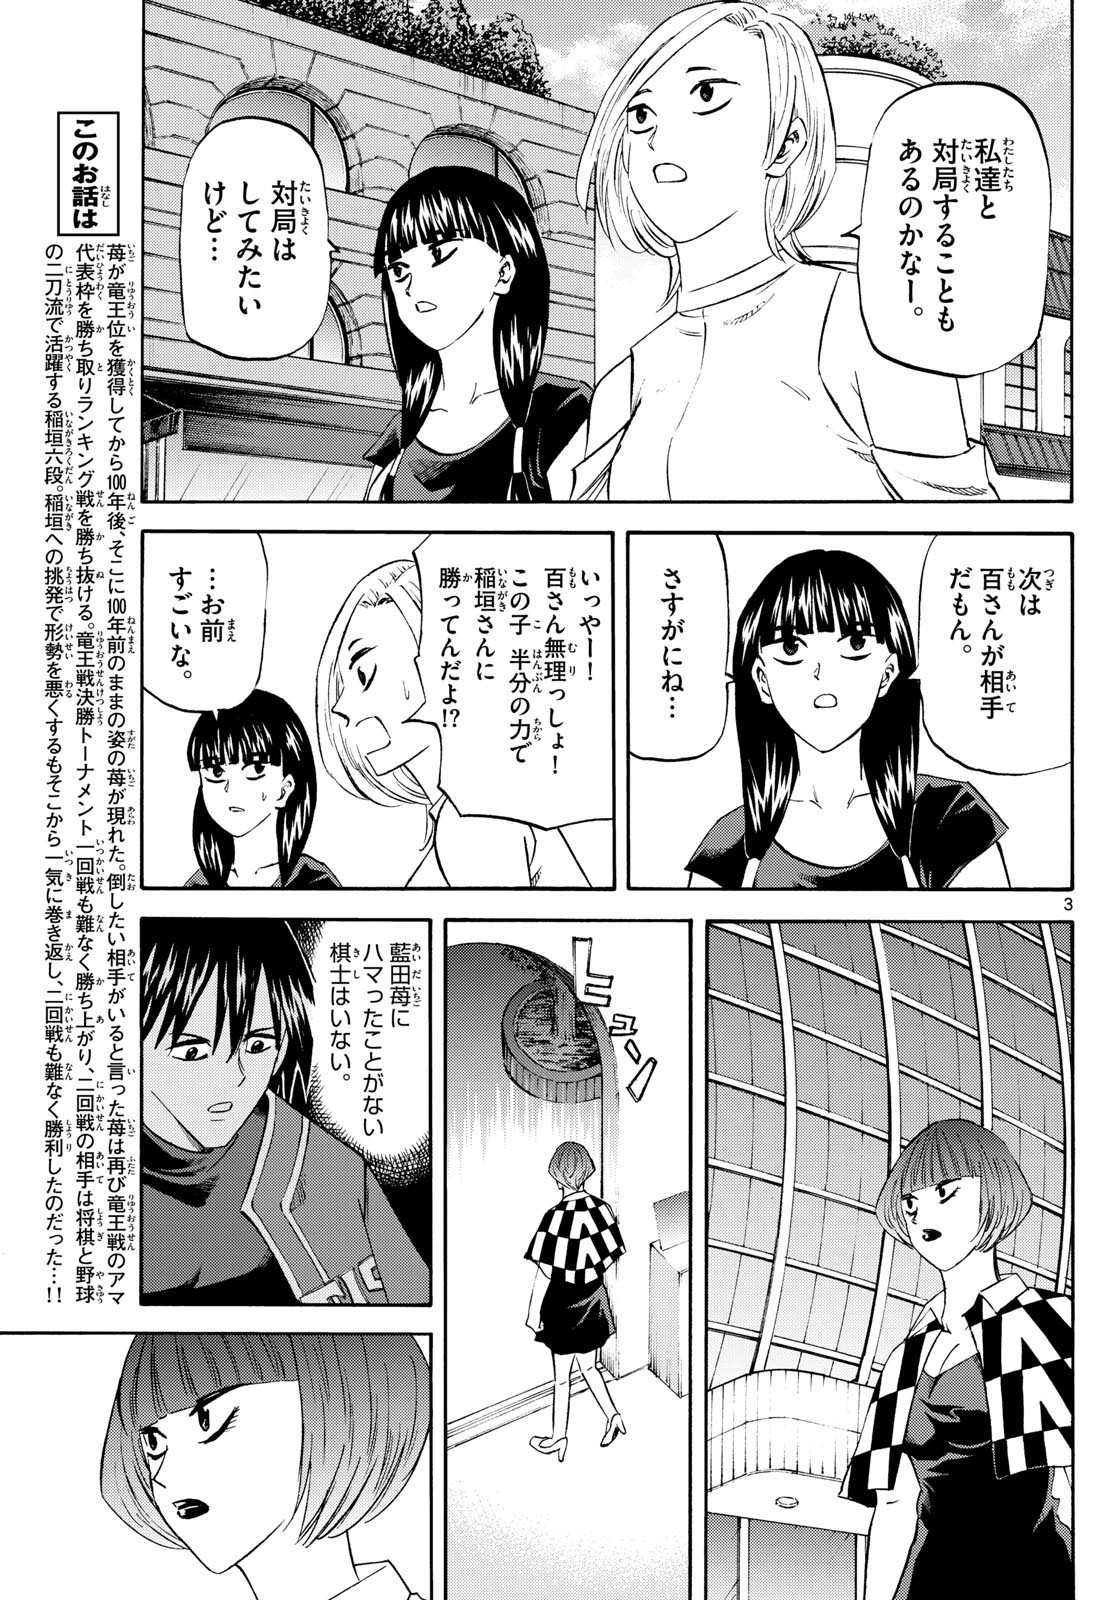 Tatsu to Ichigo - Chapter 199 - Page 3